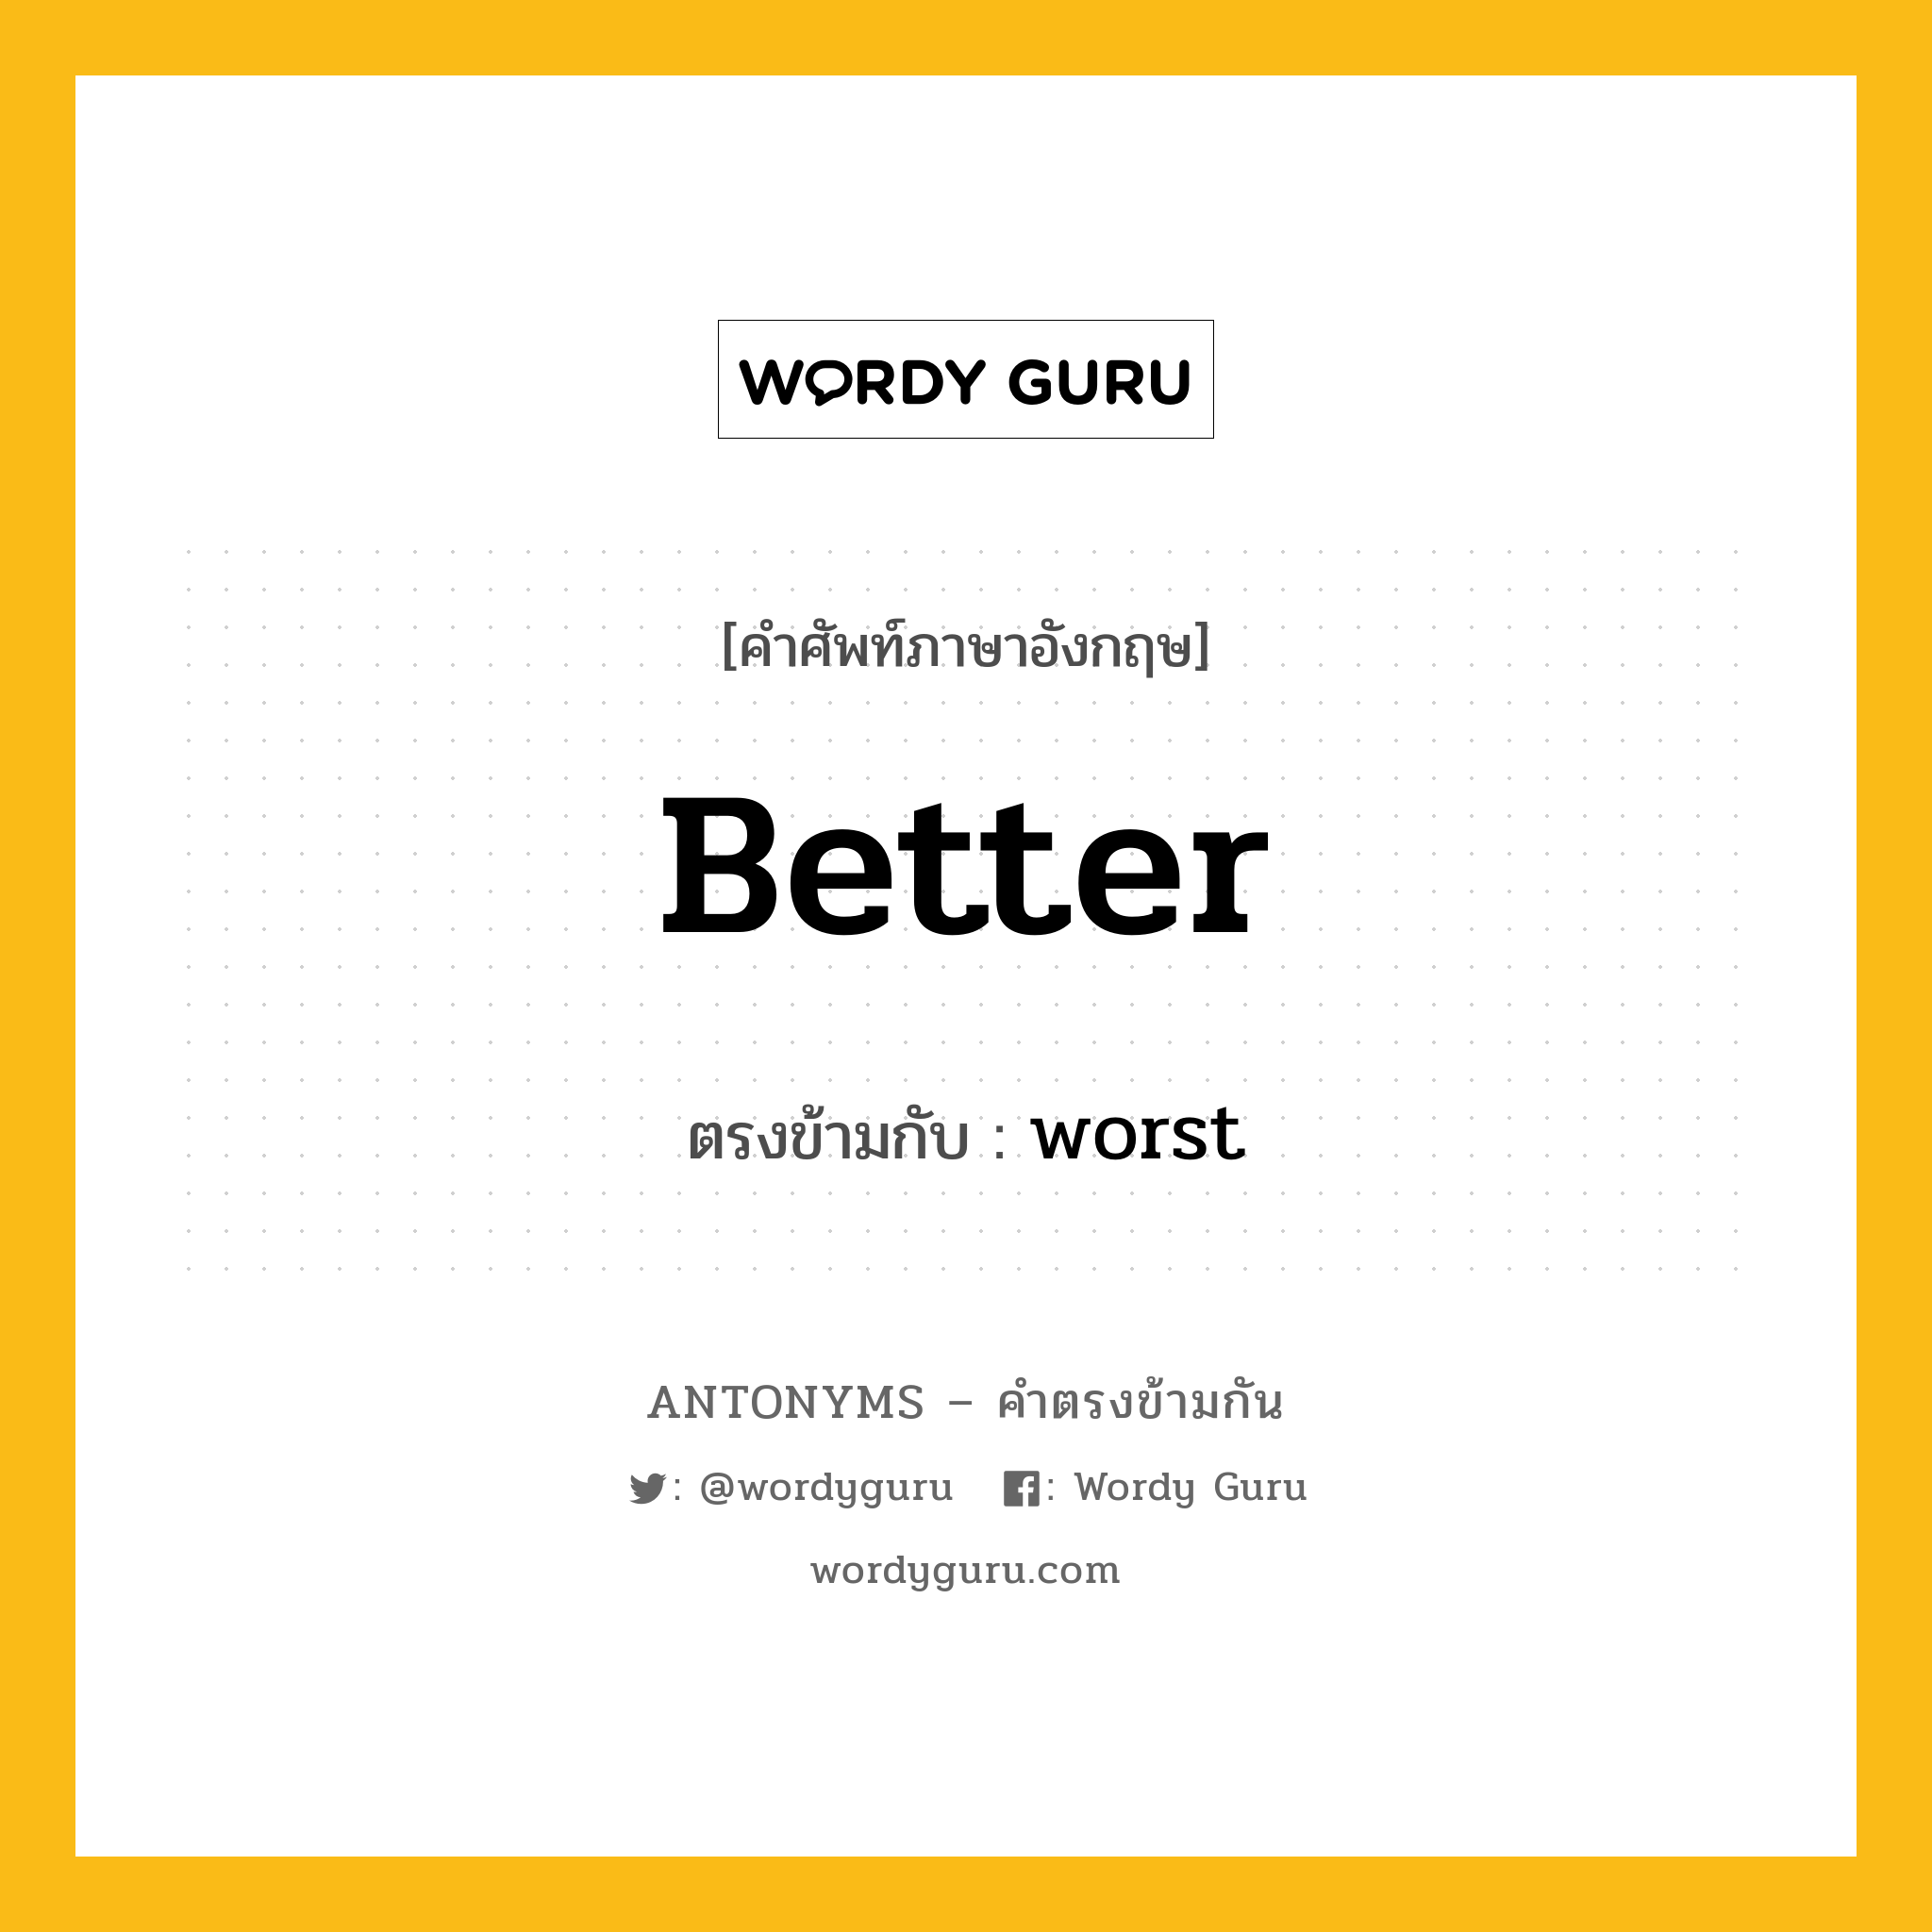 better เป็นคำตรงข้ามกับคำไหนบ้าง?, คำศัพท์ภาษาอังกฤษ better ตรงข้ามกับ worst หมวด worst